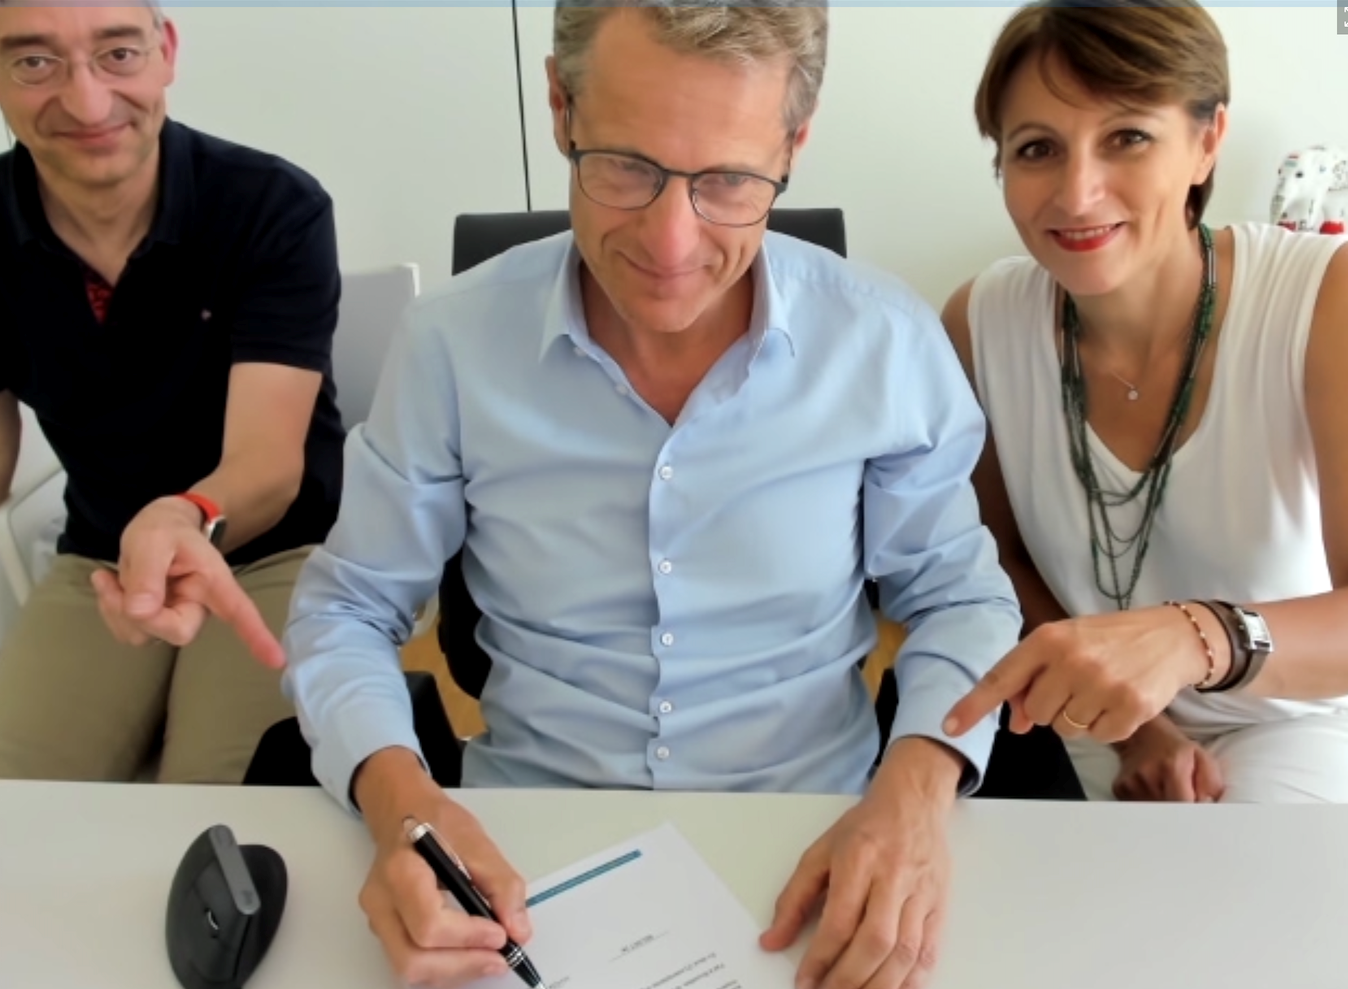 Claude Demuth signe l'accord de coopération pour LU-CIX accompagné de Michel Lanners et Frédérique Ulrich